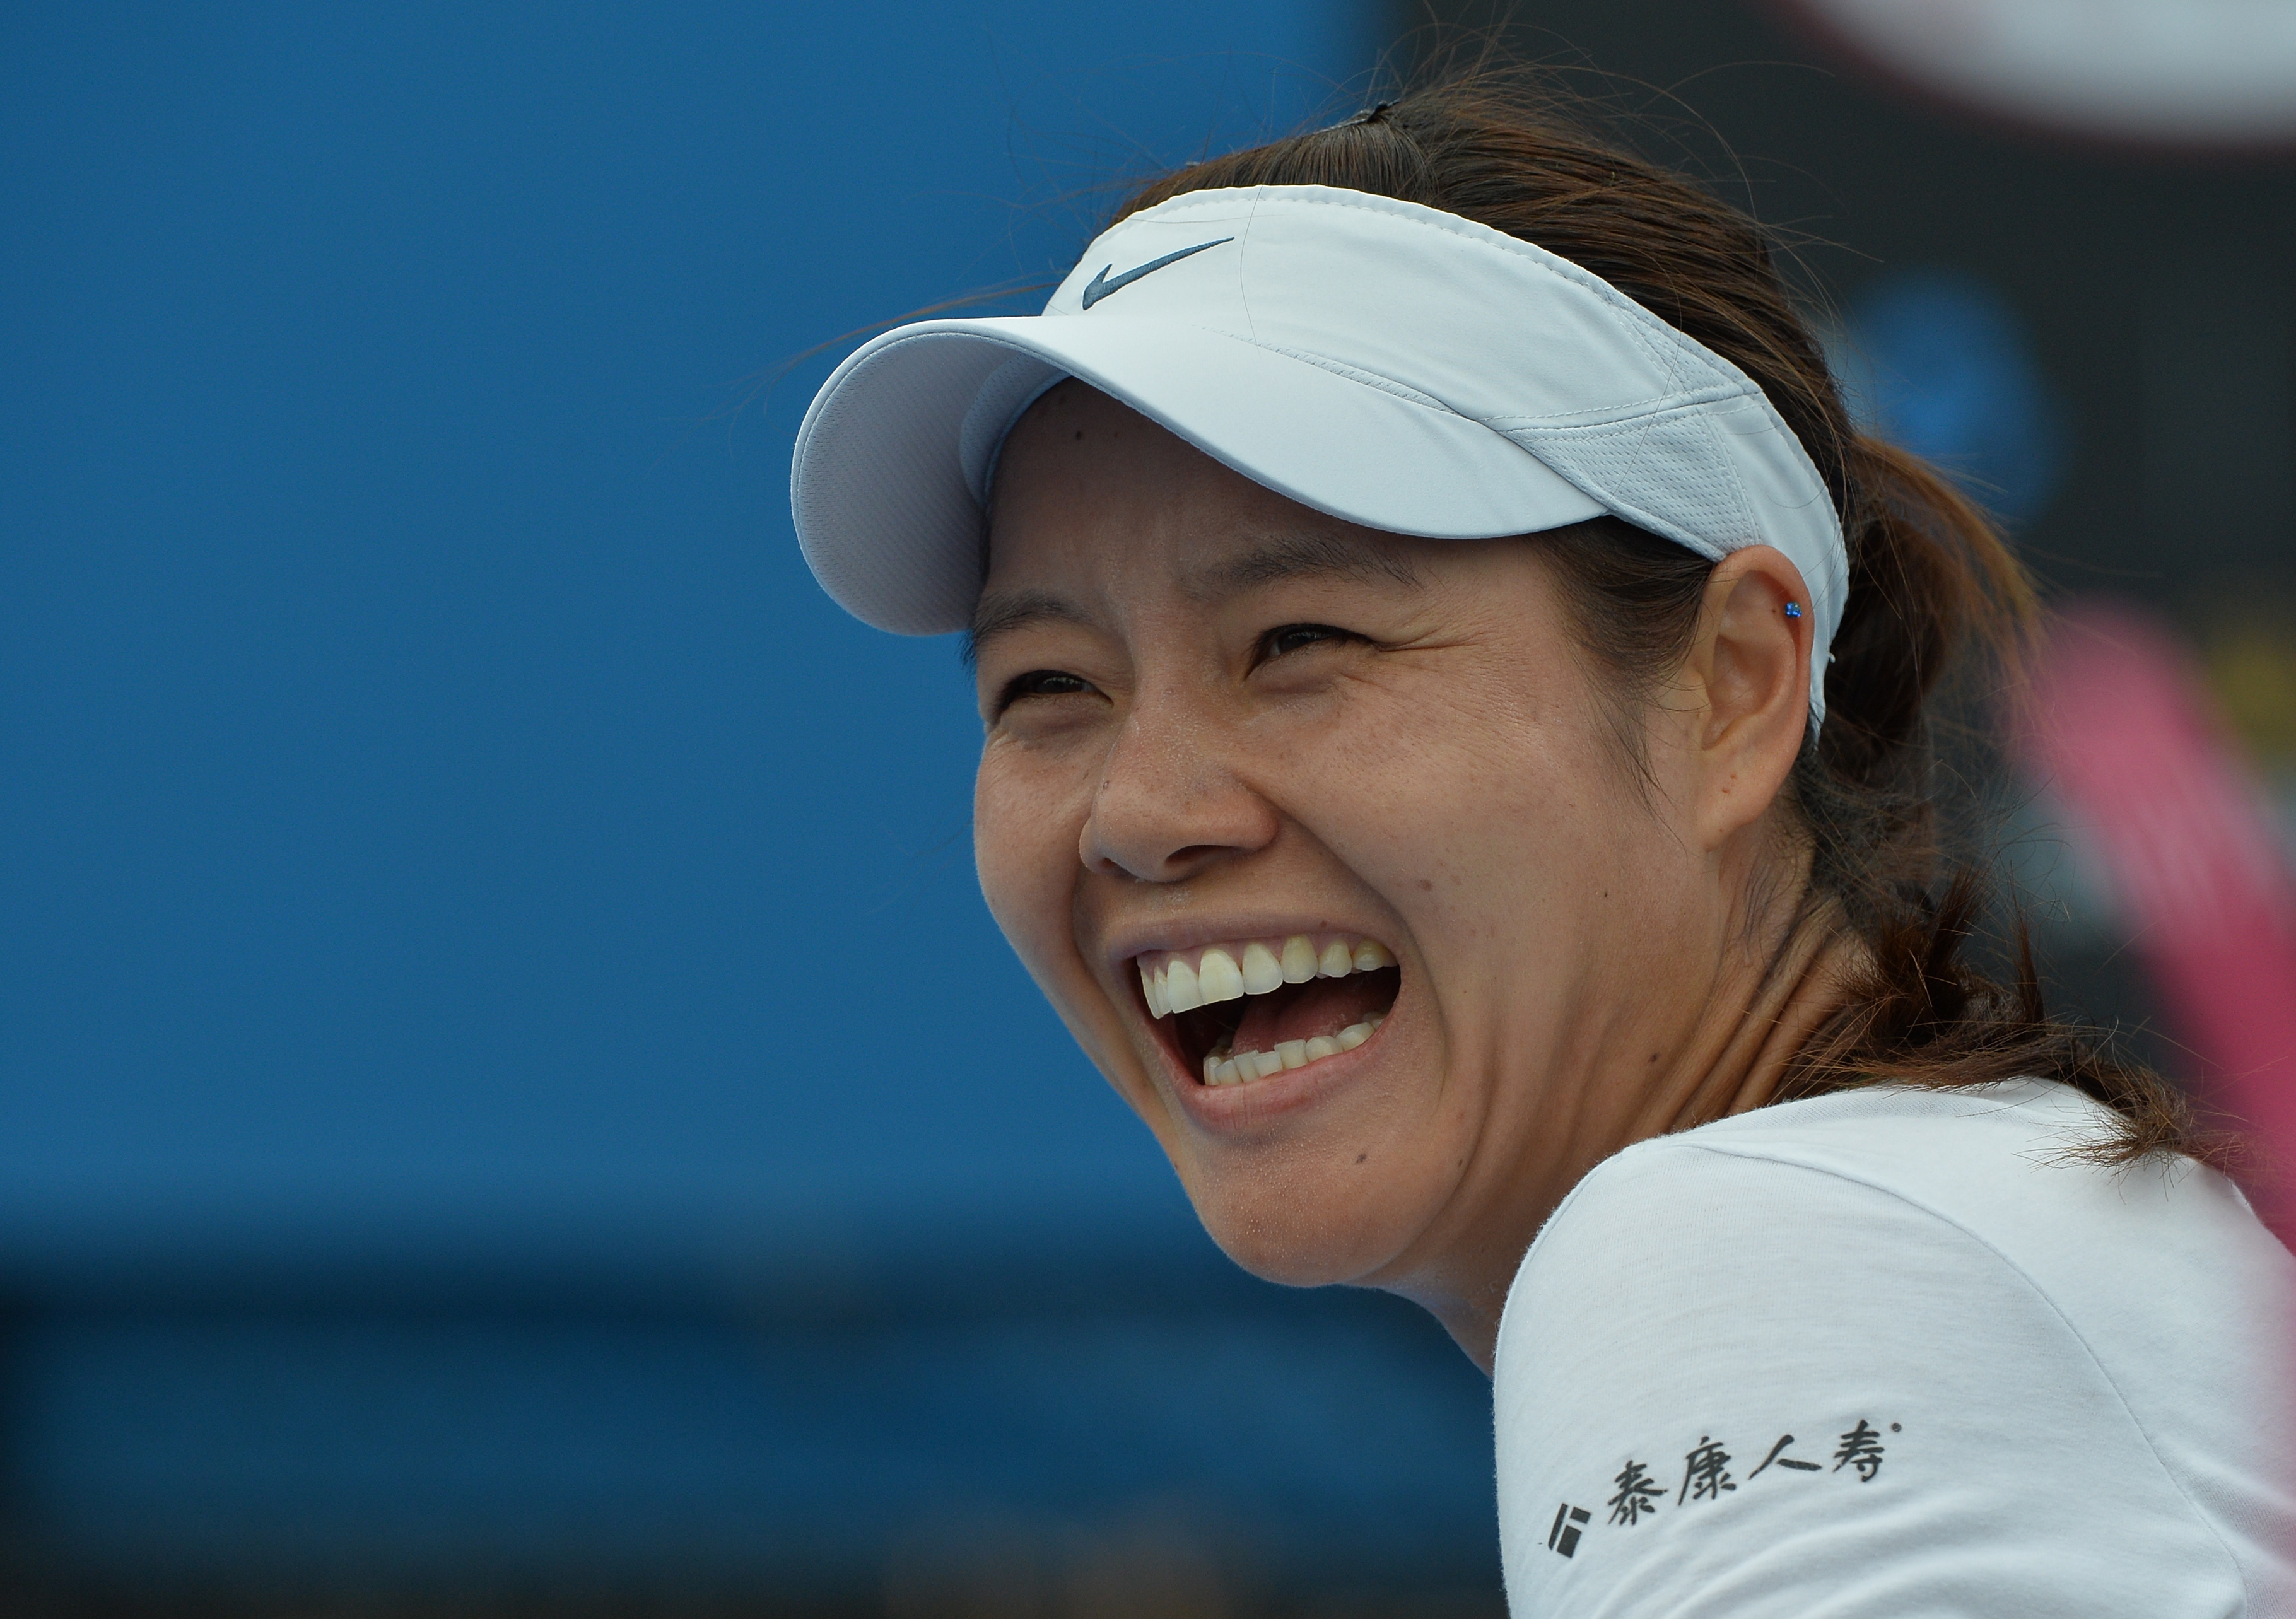 李娜澳大利亚网球公开赛练习时的笑容